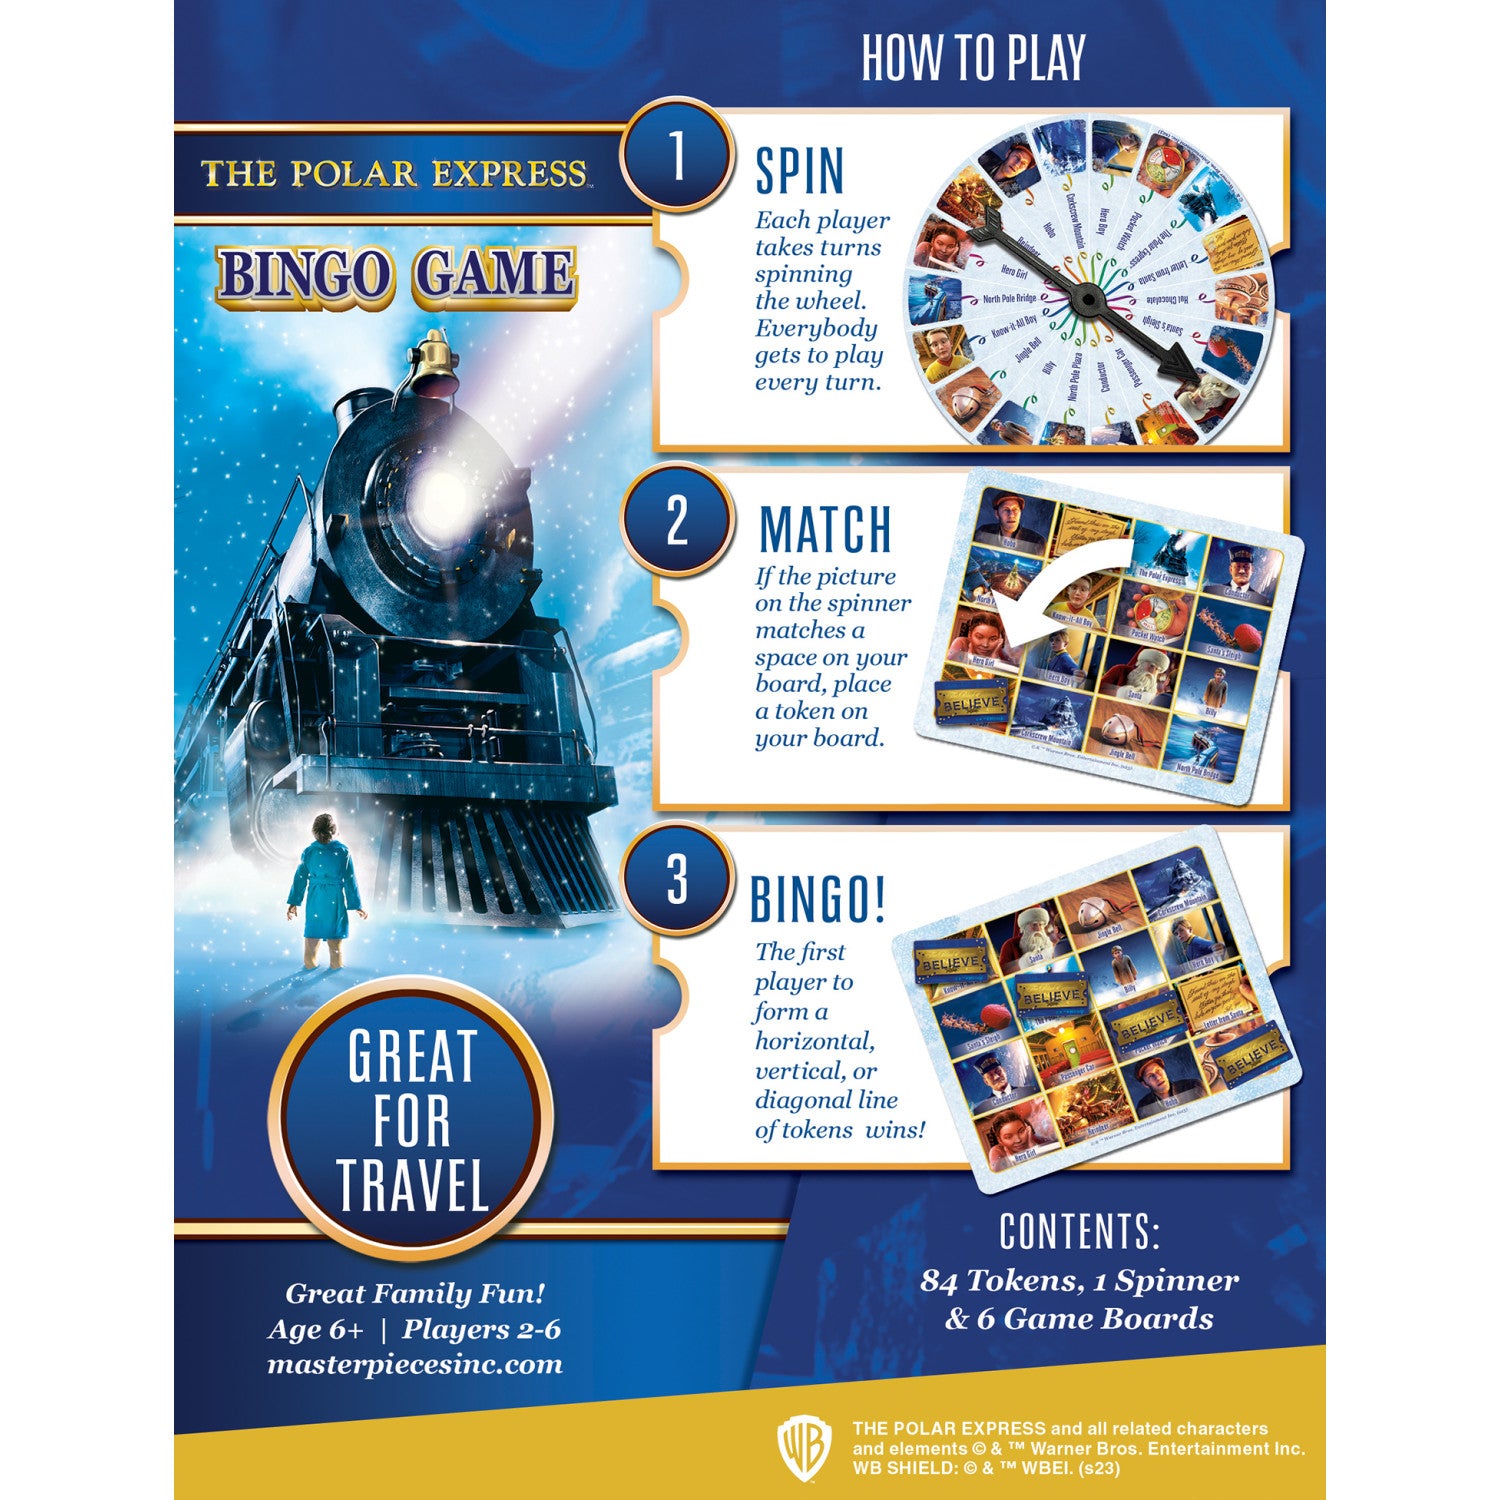 The Polar Express Bingo Game